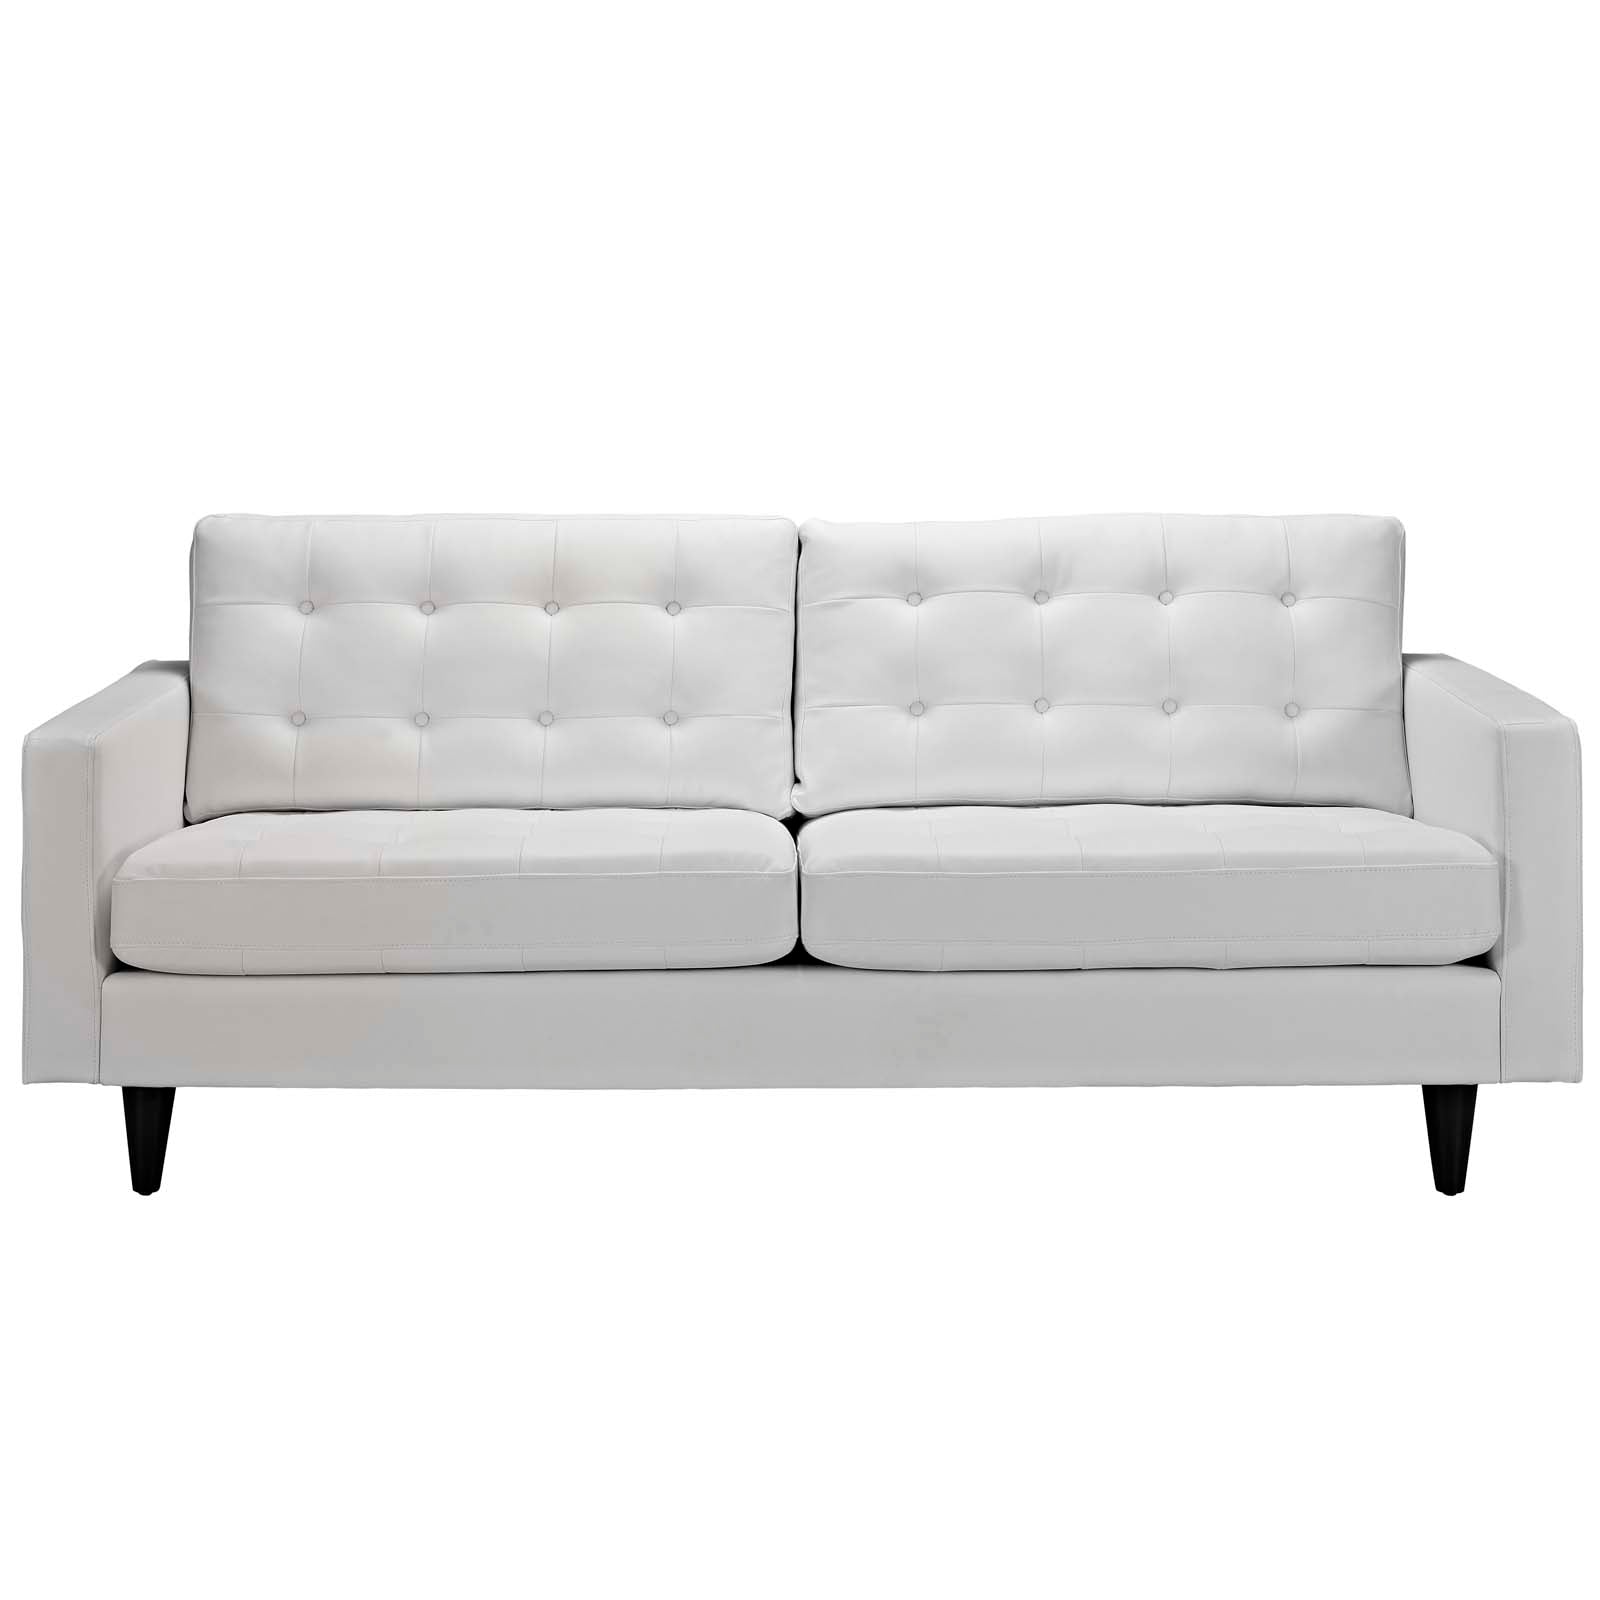 Modway Sofas & Couches - Empress Bonded Leather Sofa White